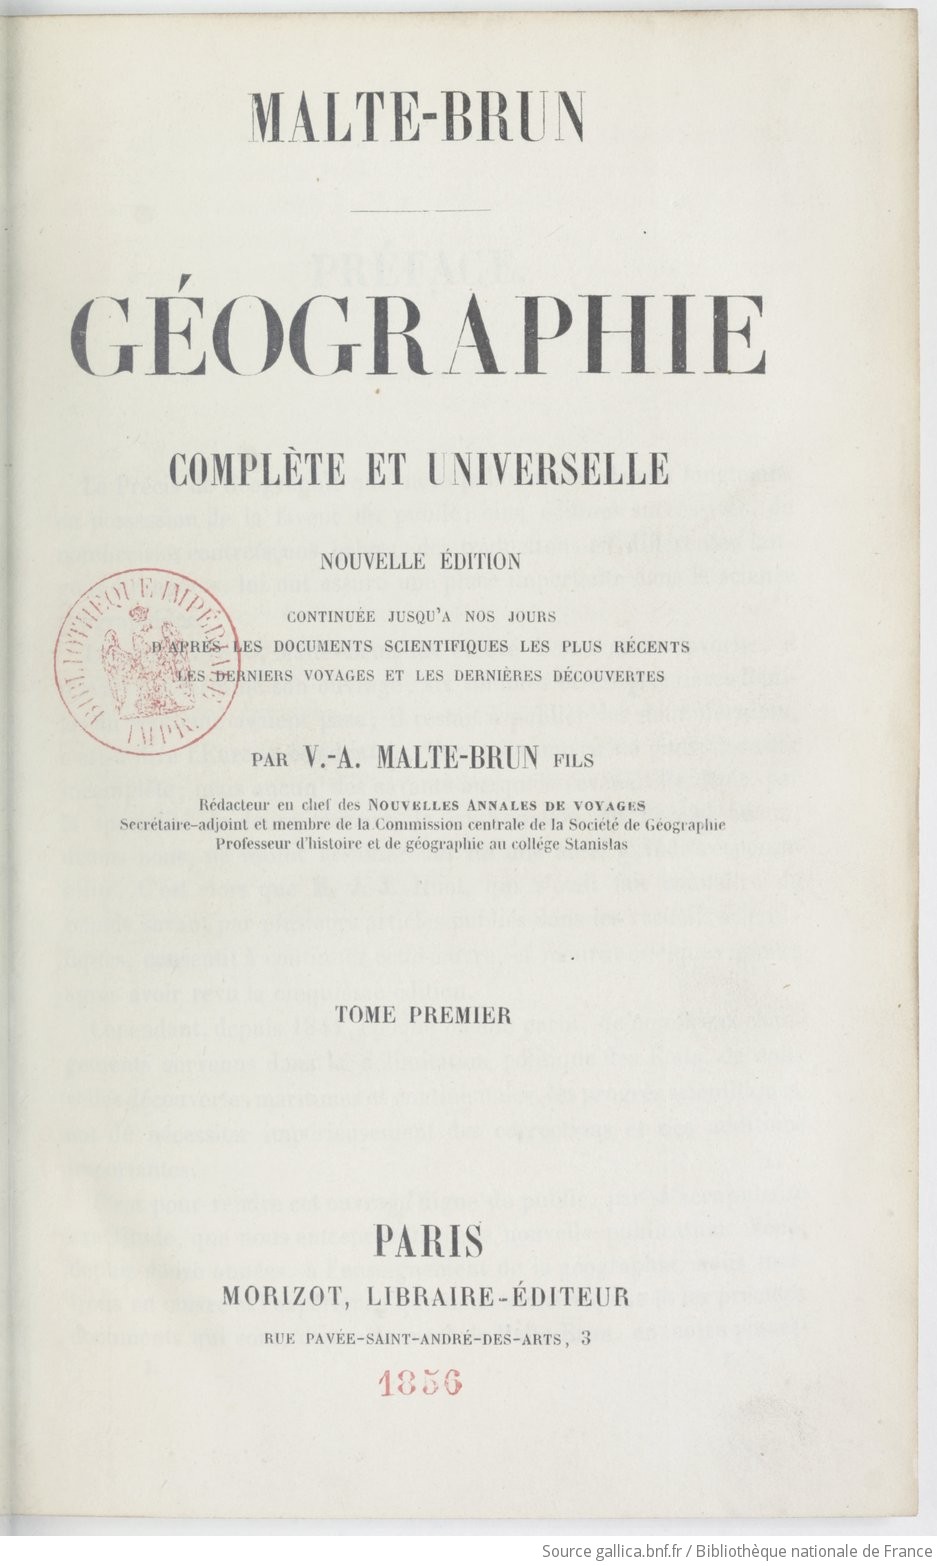 Géographie complète et universelle. Tome 1 / Malte-Brun